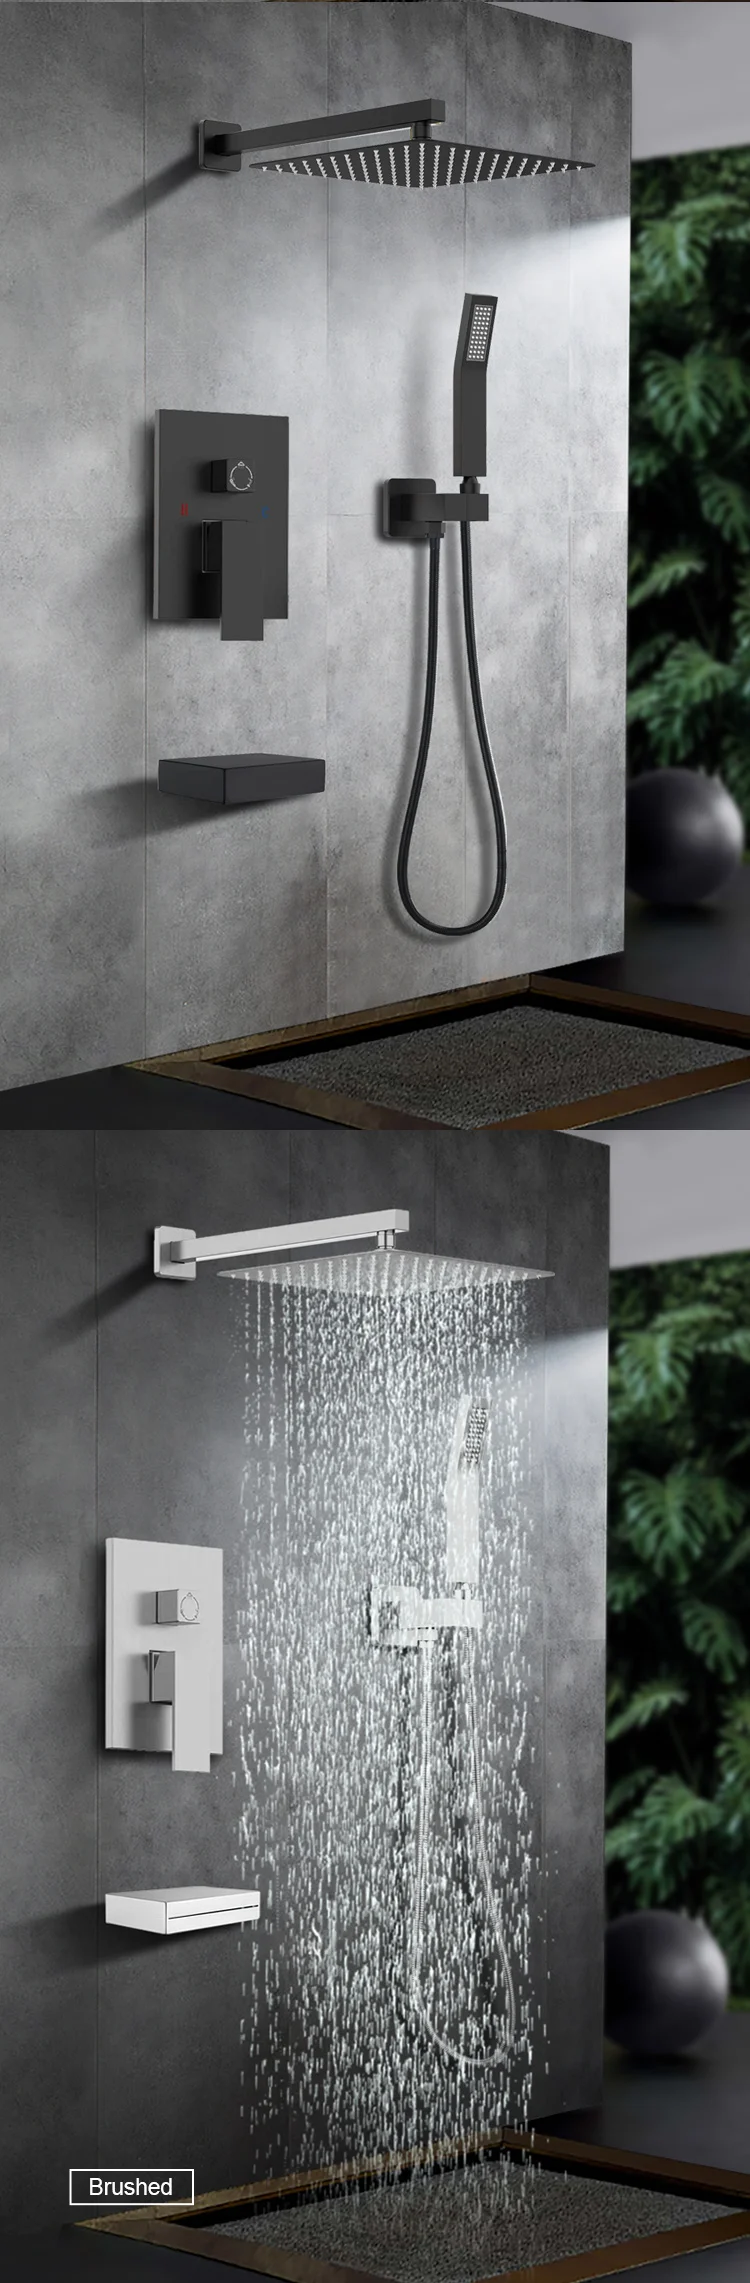 shower set in wall mounted brass tap Bathroom taps luxury brass kits rain rainfall showerset mixer faucet set rainshower